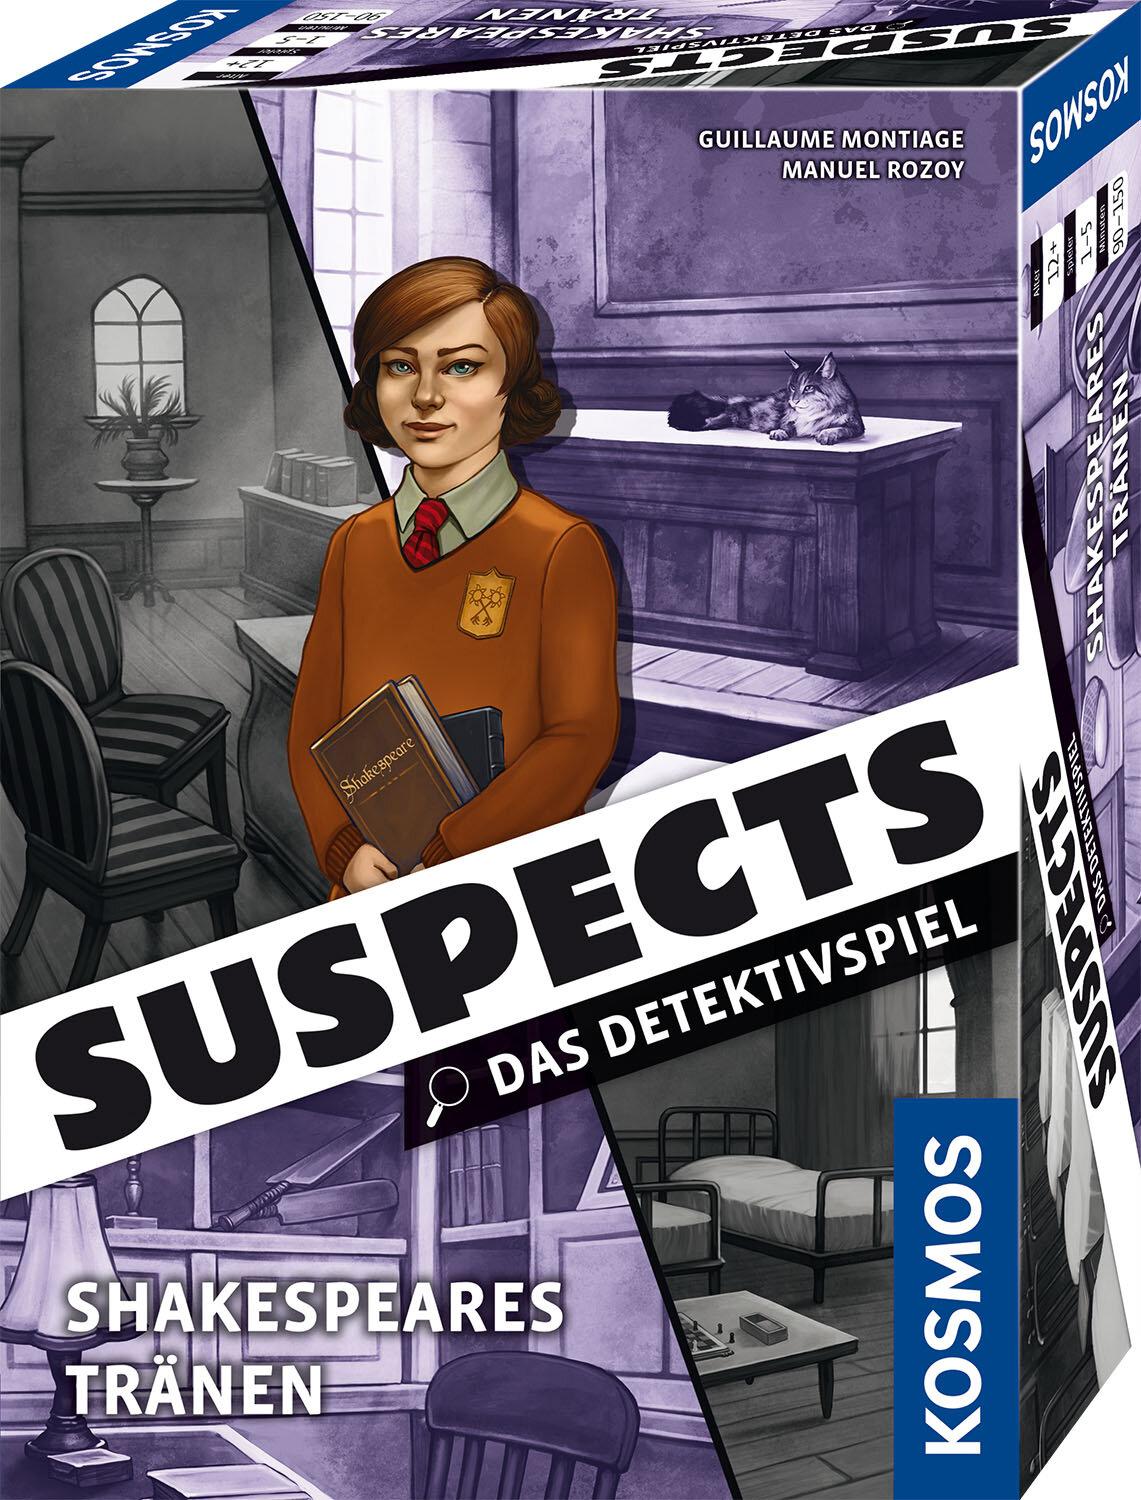 Suspects: Das Detektivspiel - Shakespeares Tränen